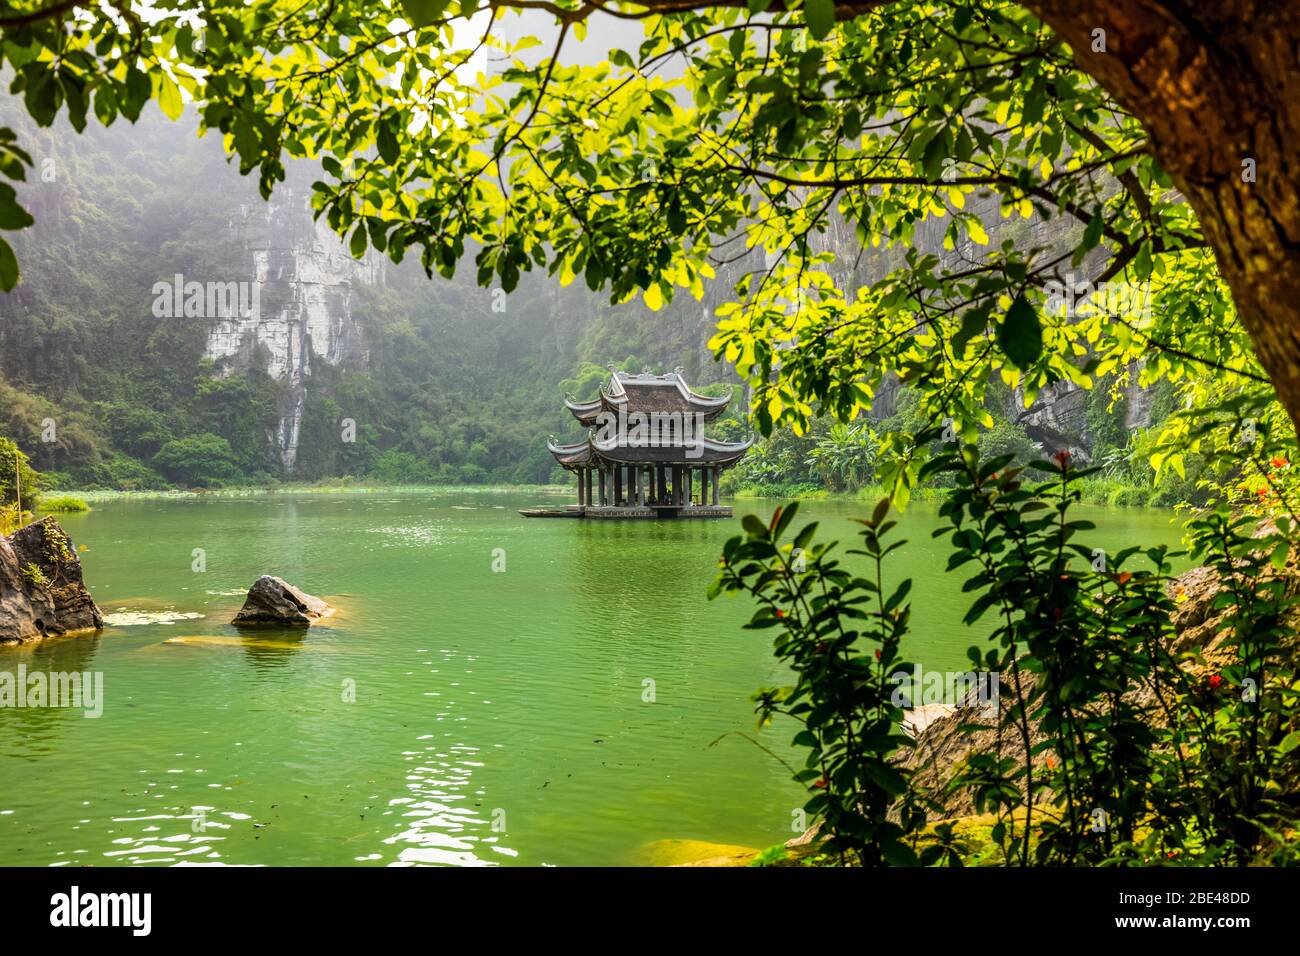 Üppige Landschaft und eine traditionelle asiatische Struktur in der Mitte eines grünen Sees; Ninh Binh Provinz, Vietnam Stockfoto